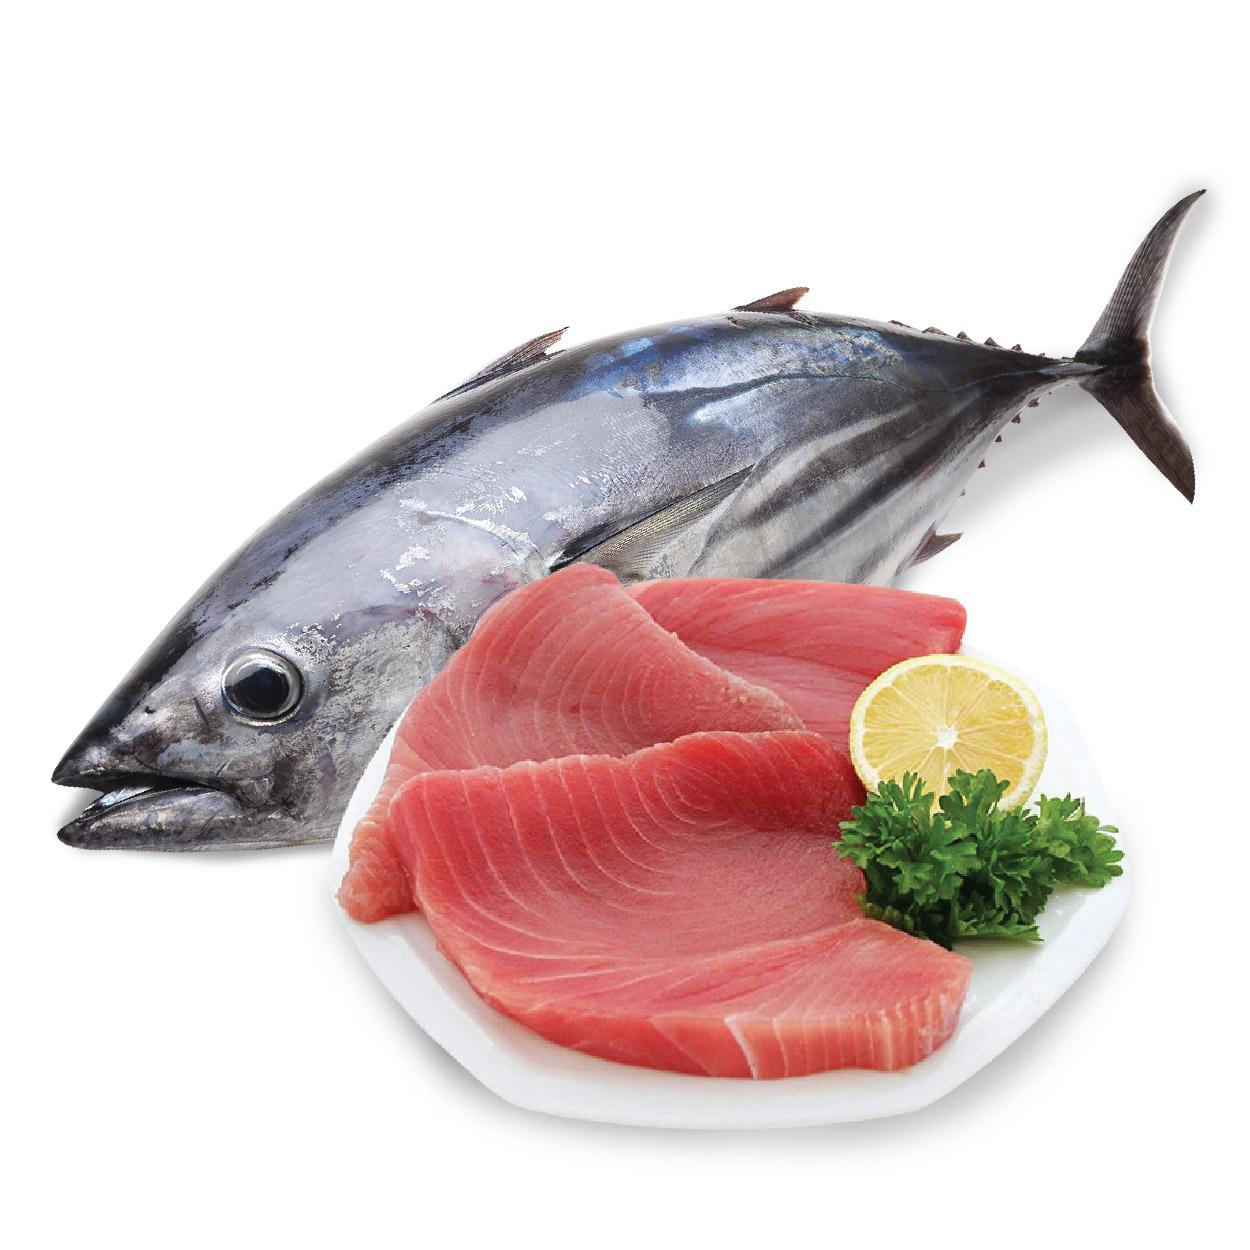 Cá ngừ đại dương làm món gì ngon? | haisansaigon.com.vn